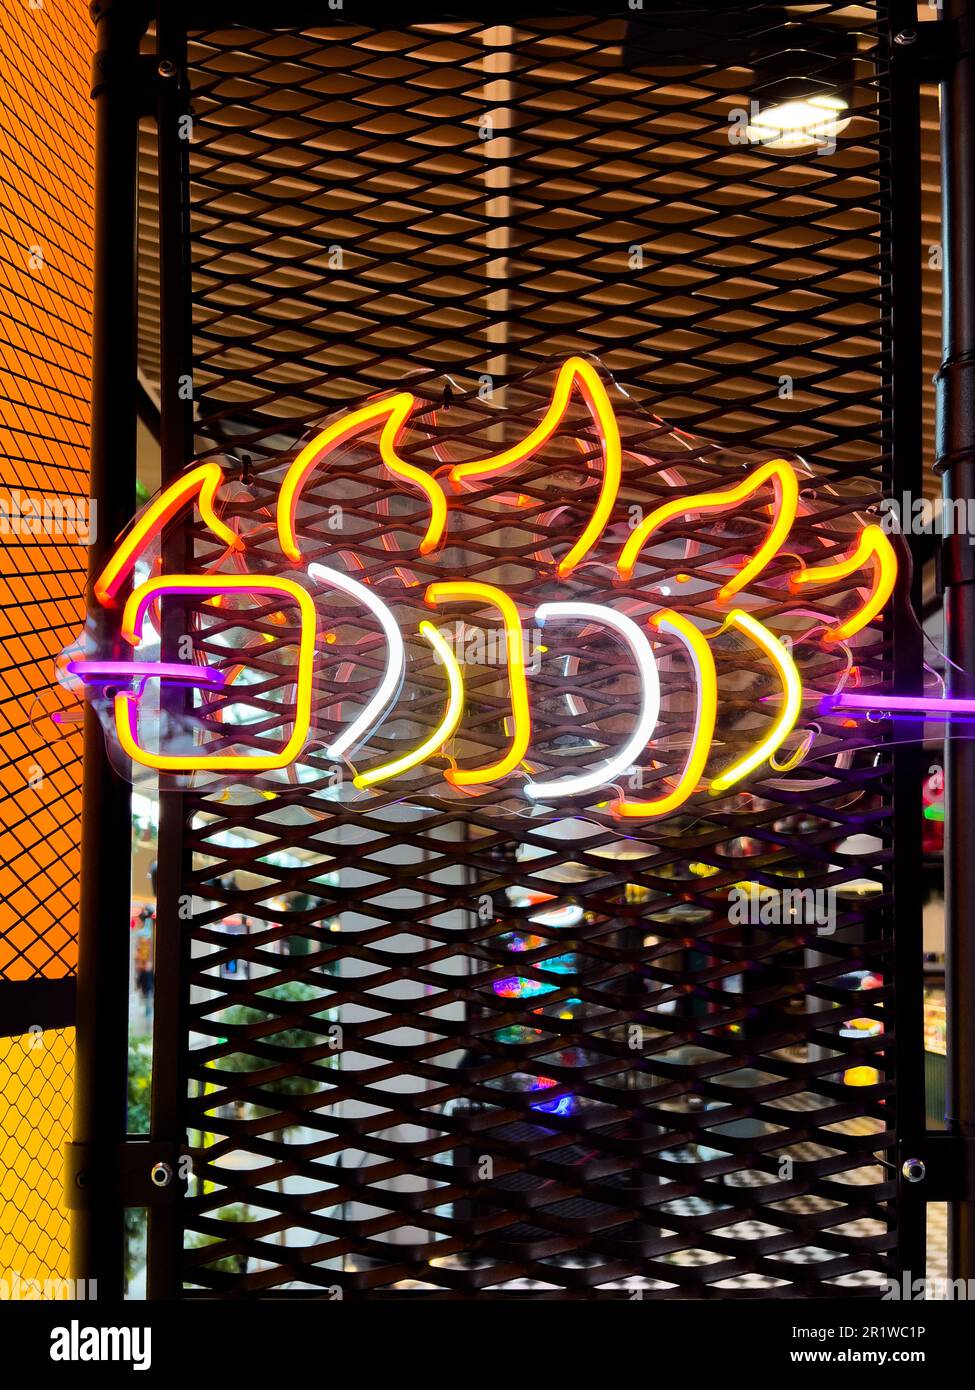 Beleuchteter Grill. Bunte Sammlung von Symbolen oder Schildern mit farbenfrohem Neonlicht für Café, Restaurant, Motel, Cocktailbar Stockfoto